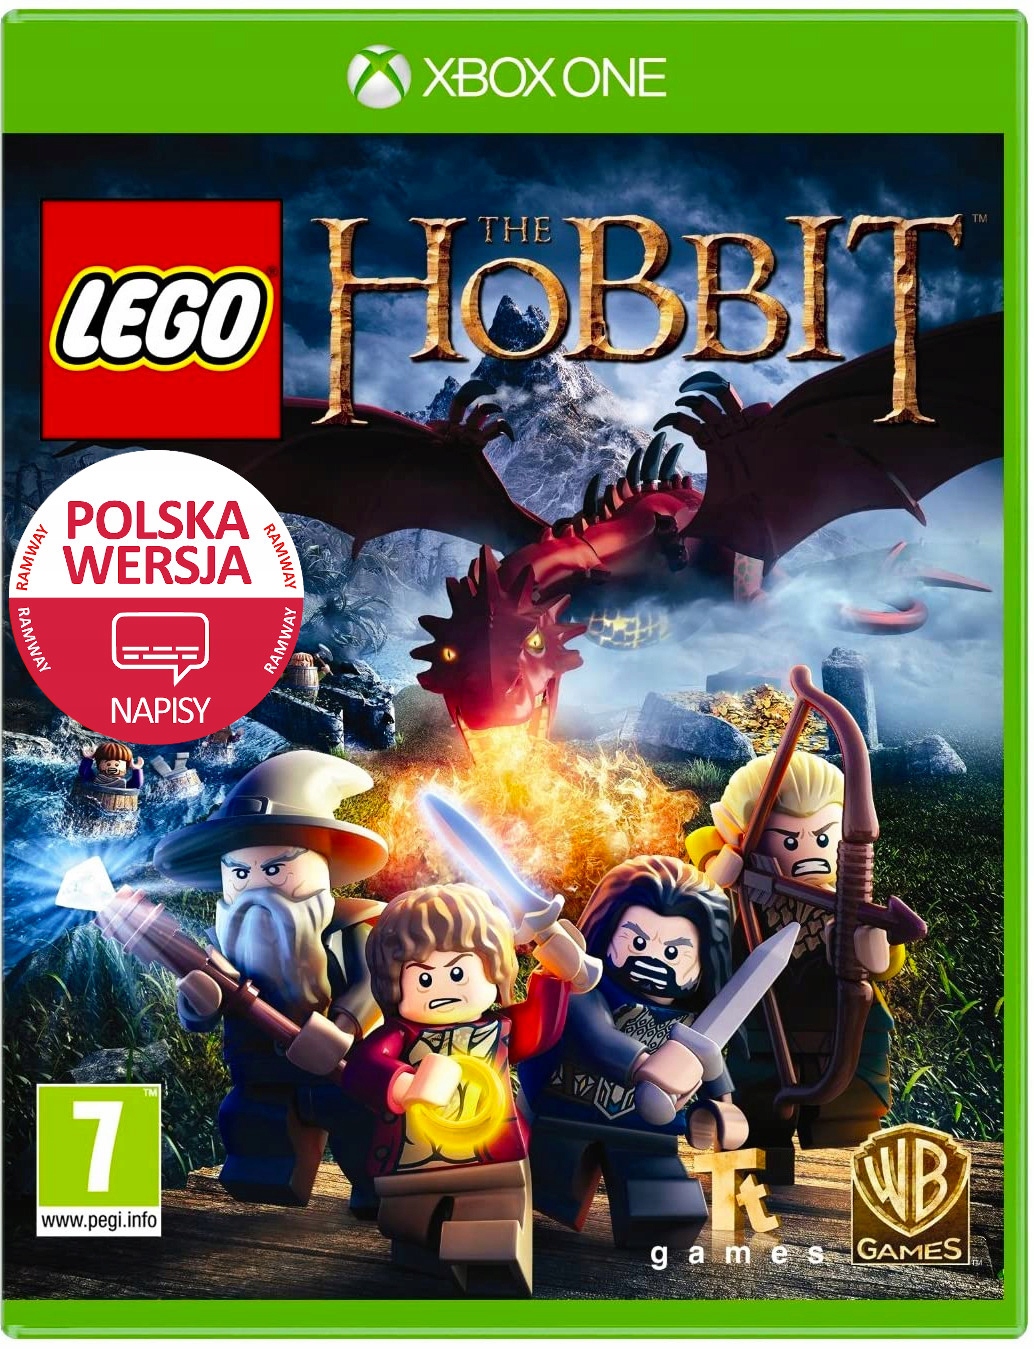 LEGO Hobbit PL Xbox One Władca Pierścieni 2 Graczy - 79 zł - Stan: nowy -  Gra przygodowa - 10636851500 - Allegro.pl